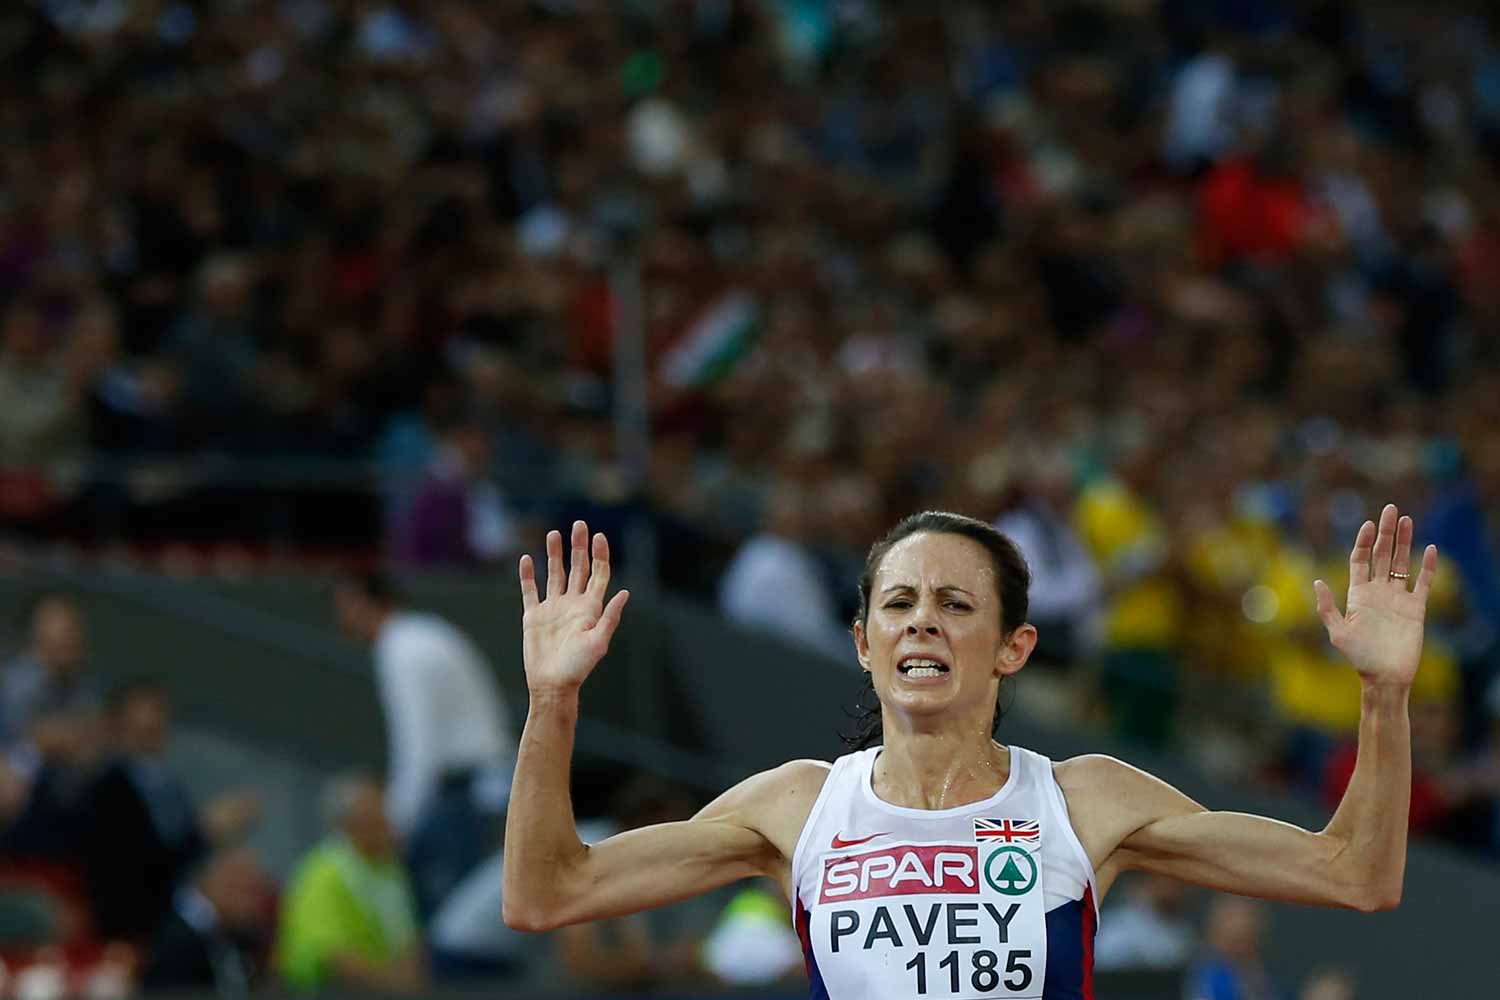 Jo Pavey, la atleta con más edad que participará en Río